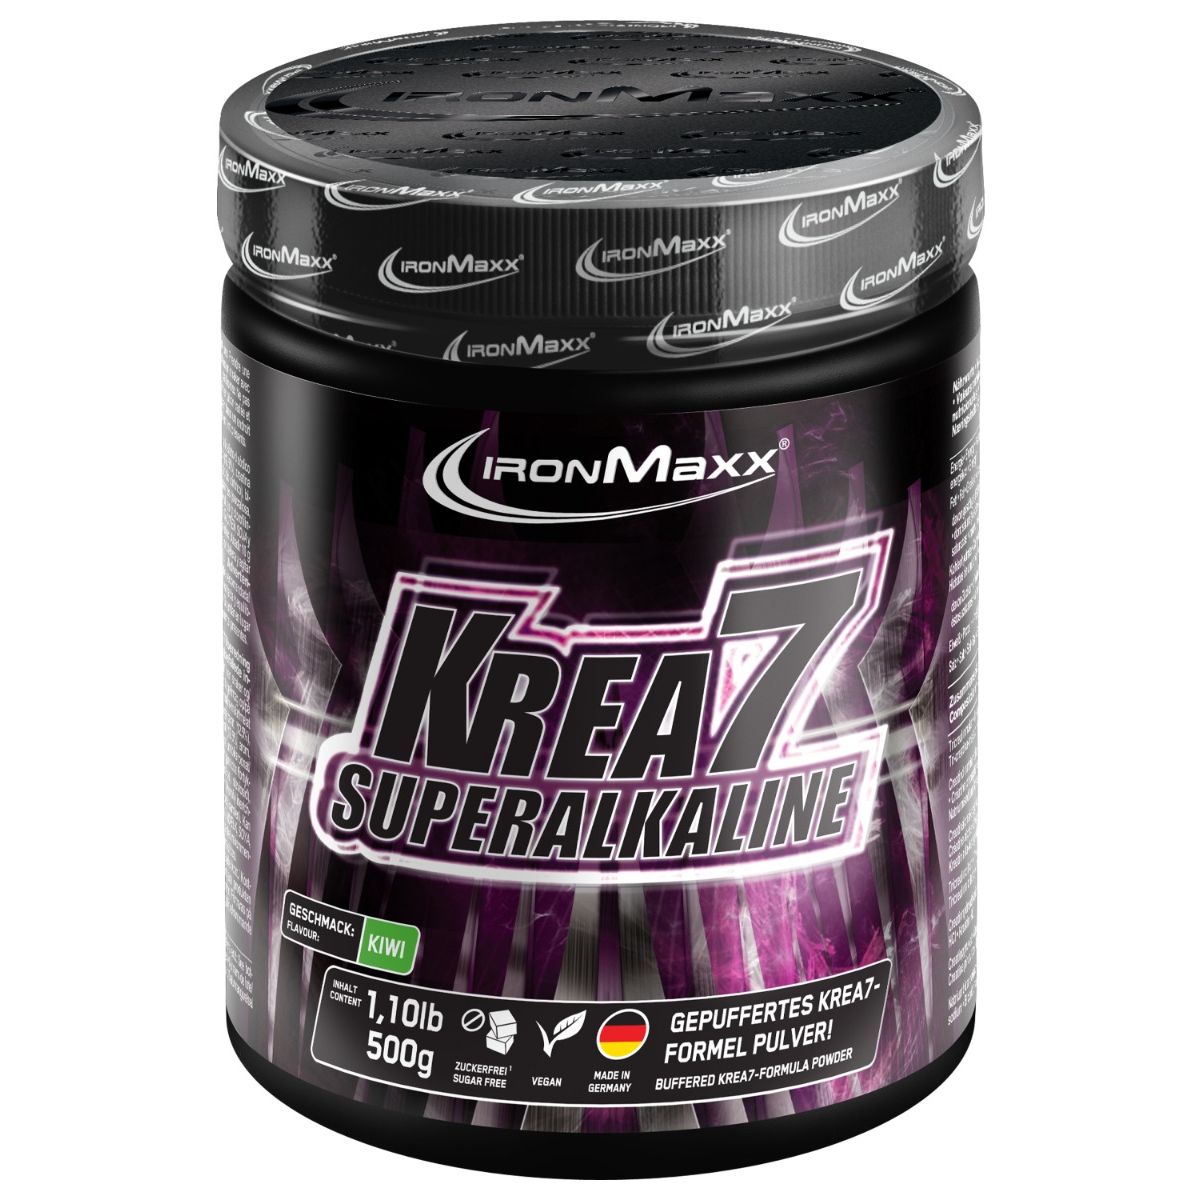 Krea7 Superalkaline Powder (500g)